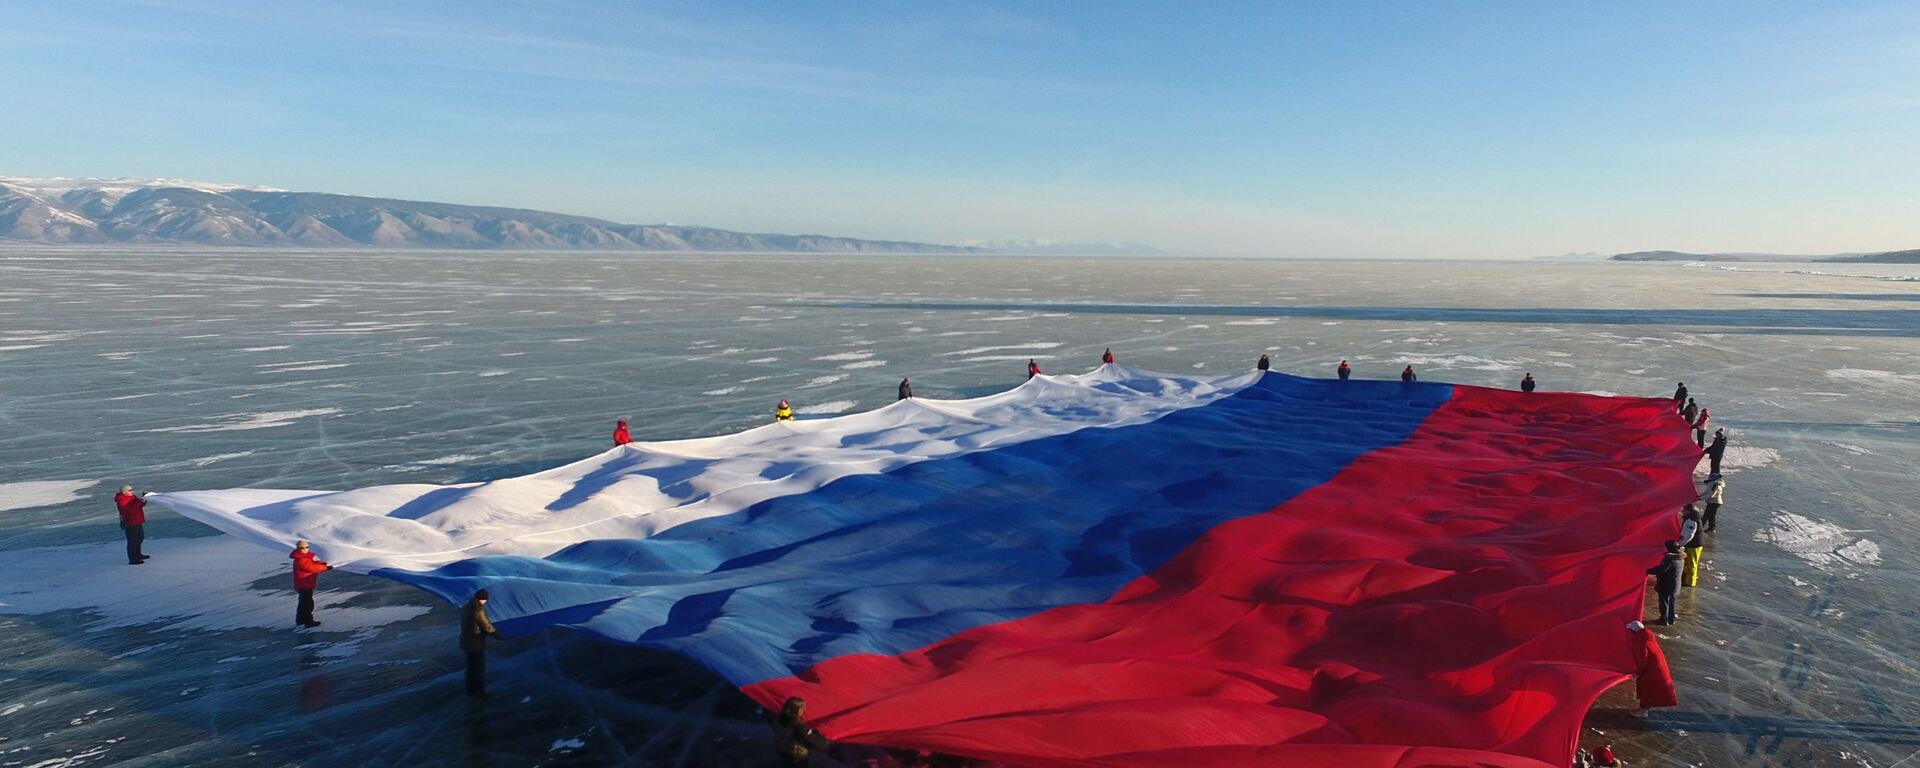 Флаг России развернули на льду Байкала - Sputnik Грузия, 1920, 23.07.2021